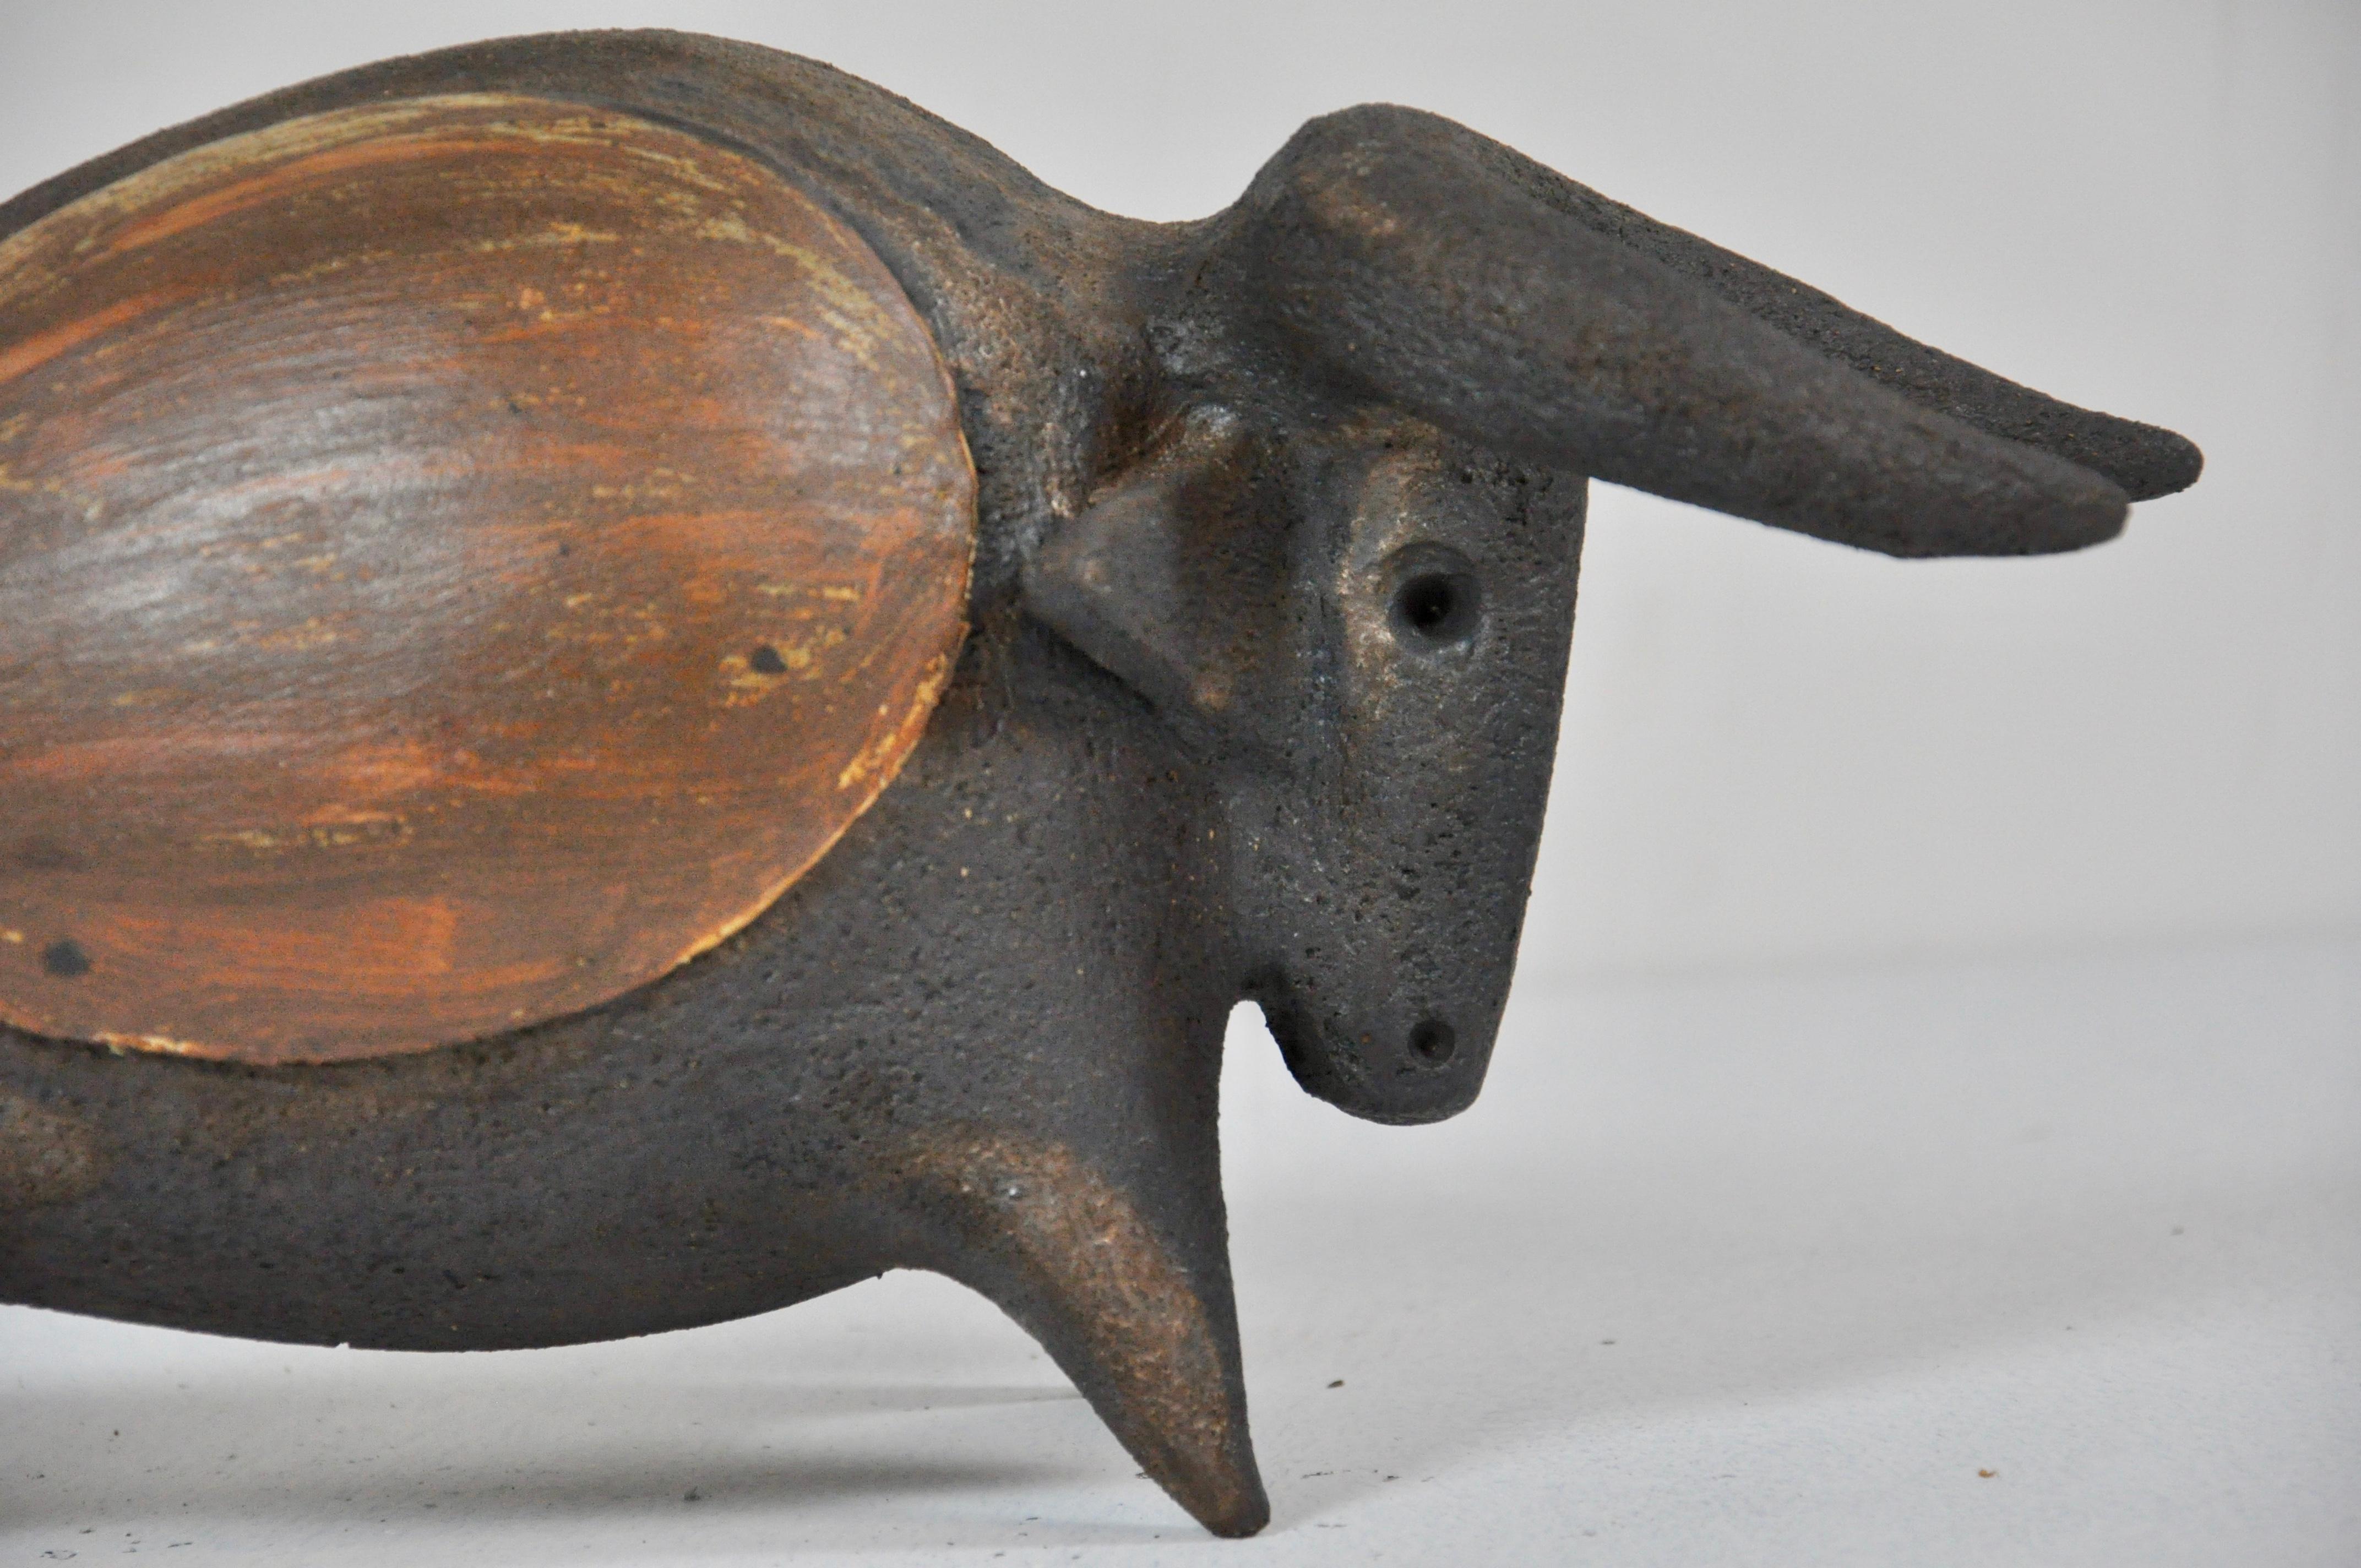 Ceramic bull by Dominique Pouchain, 2000s.